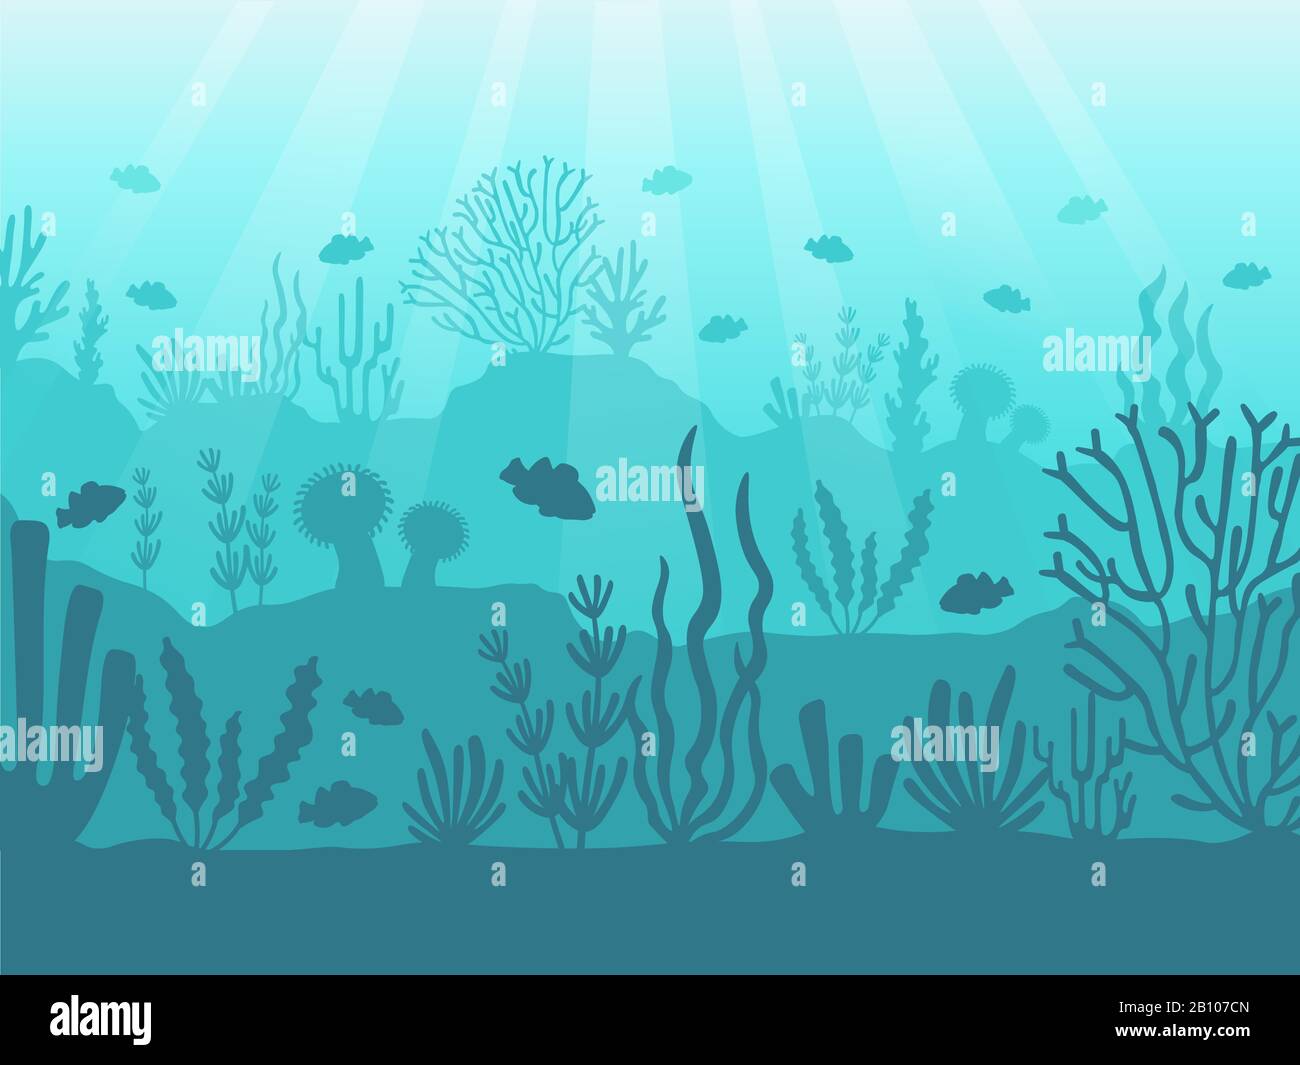 Sott'acqua. Ocean barriera corallina, fondo profondo del mare e nuoto sotto l'acqua. Illustrazione del vettore di sfondo dei coralli marini Illustrazione Vettoriale